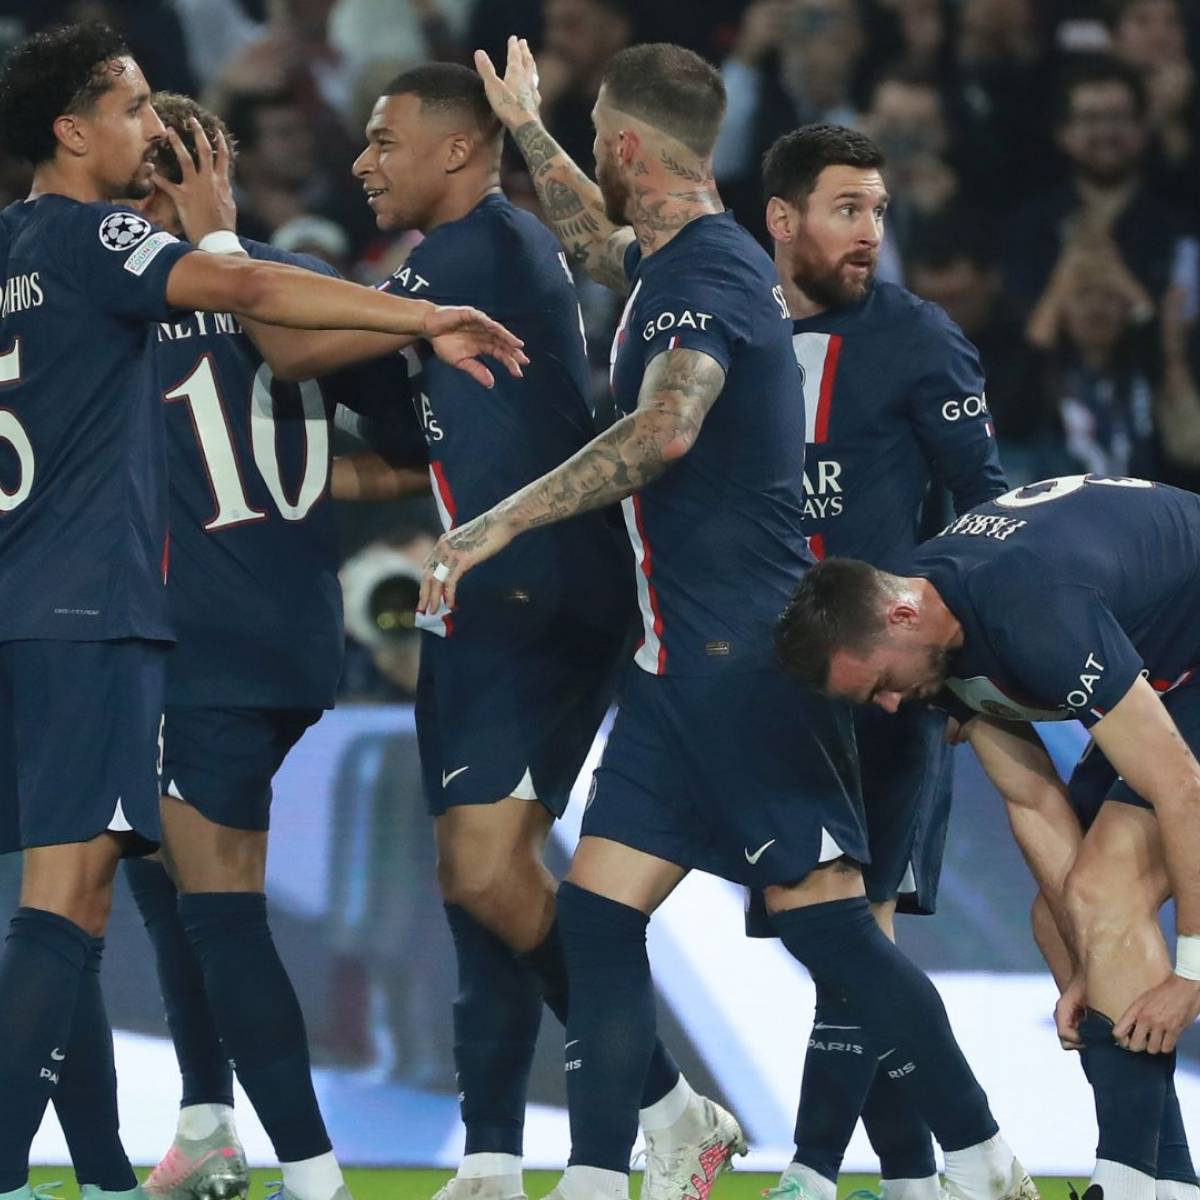 PSG : comment enfin gagner la Ligue des champions - Le Parisien